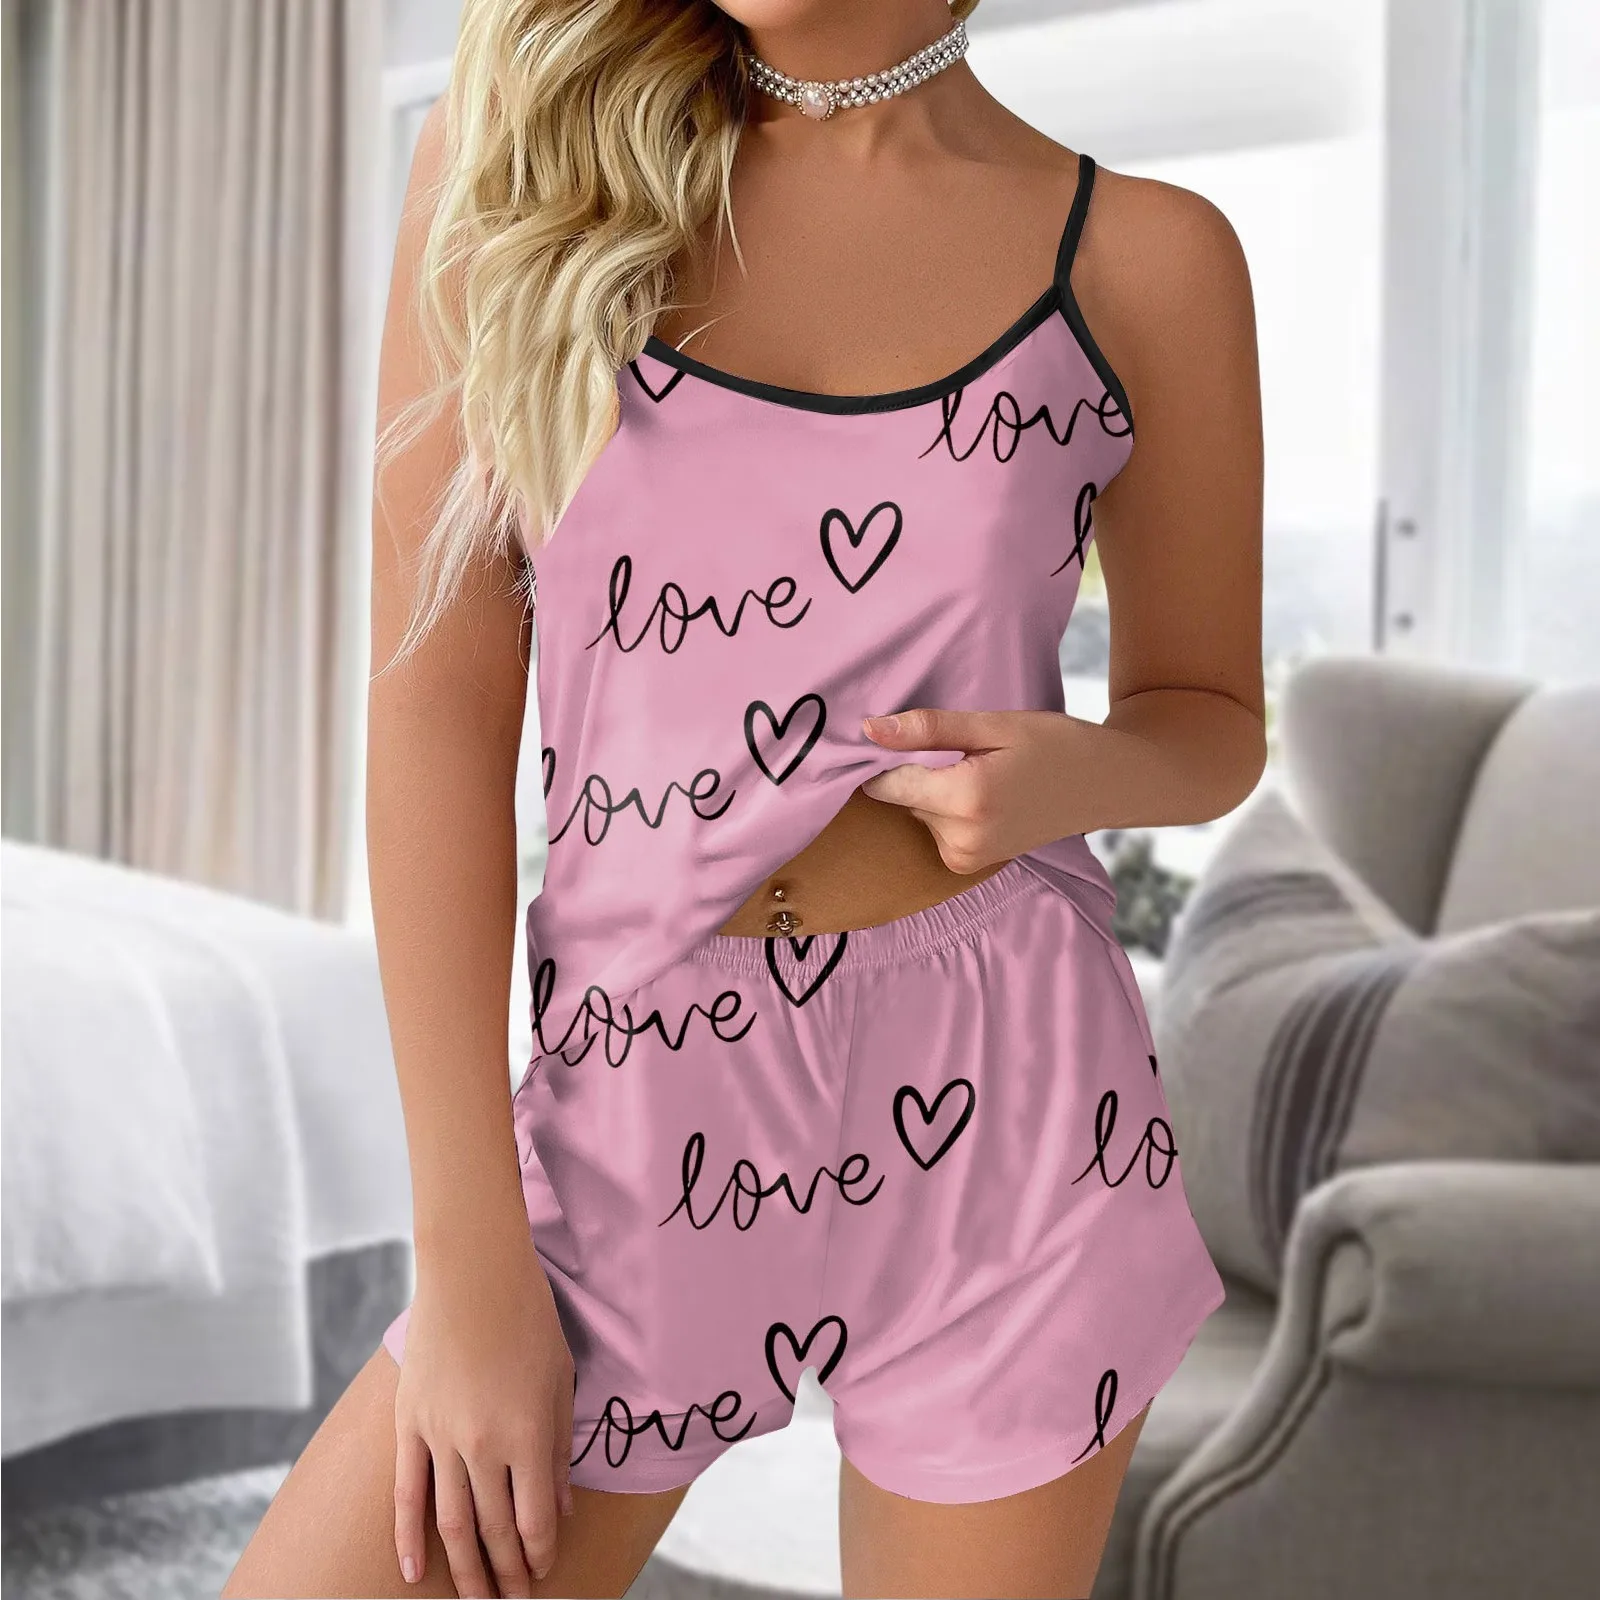 

Пижамный комплект, женская одежда для сна, атласный Шелковый топ без рукавов с принтом сердечек и шорты, пижама с бантом, нижнее белье